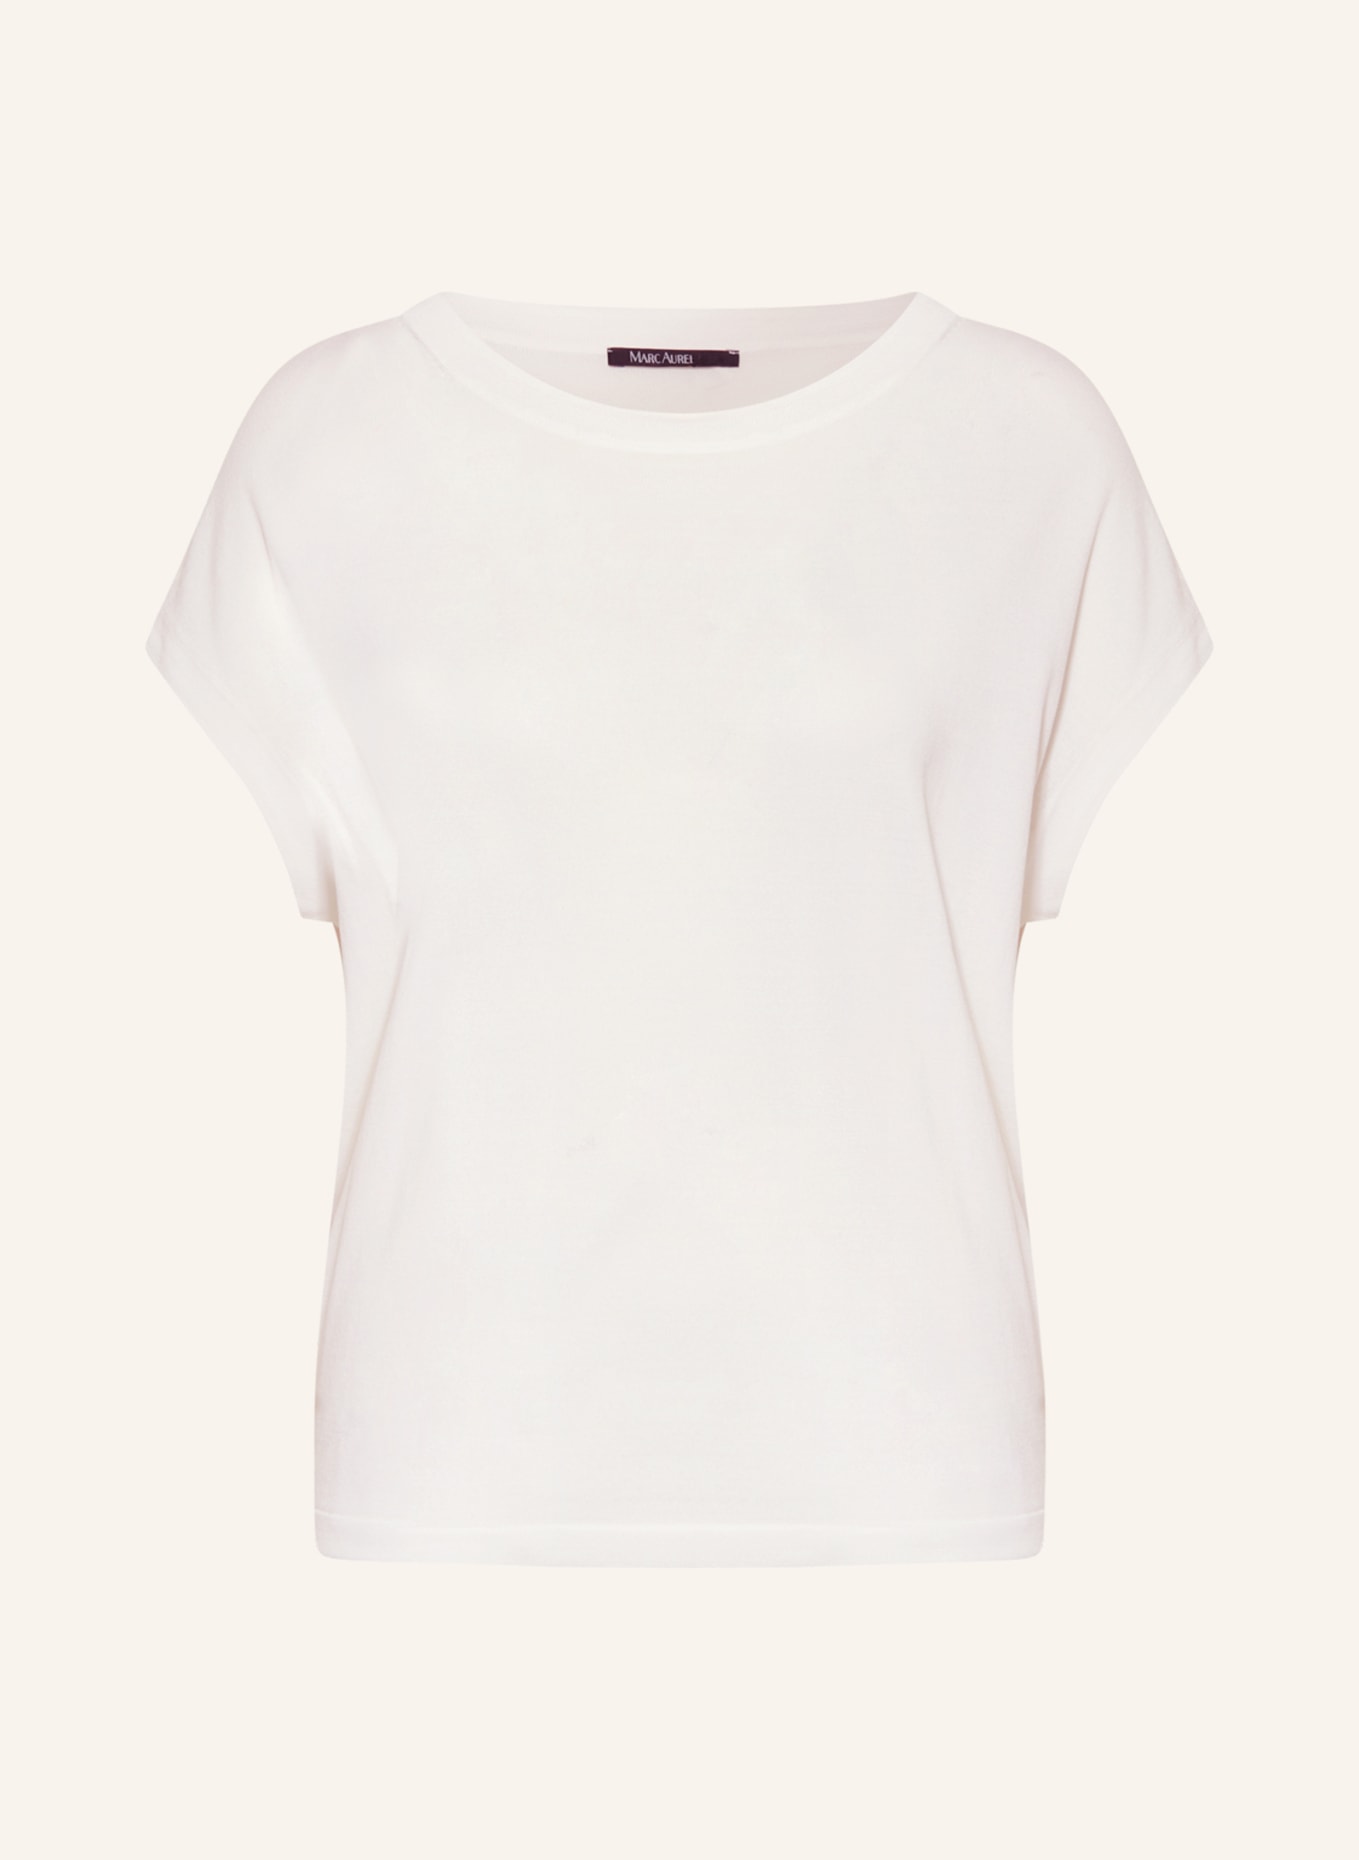 MARC AUREL Knit shirt, Color: WHITE (Image 1)